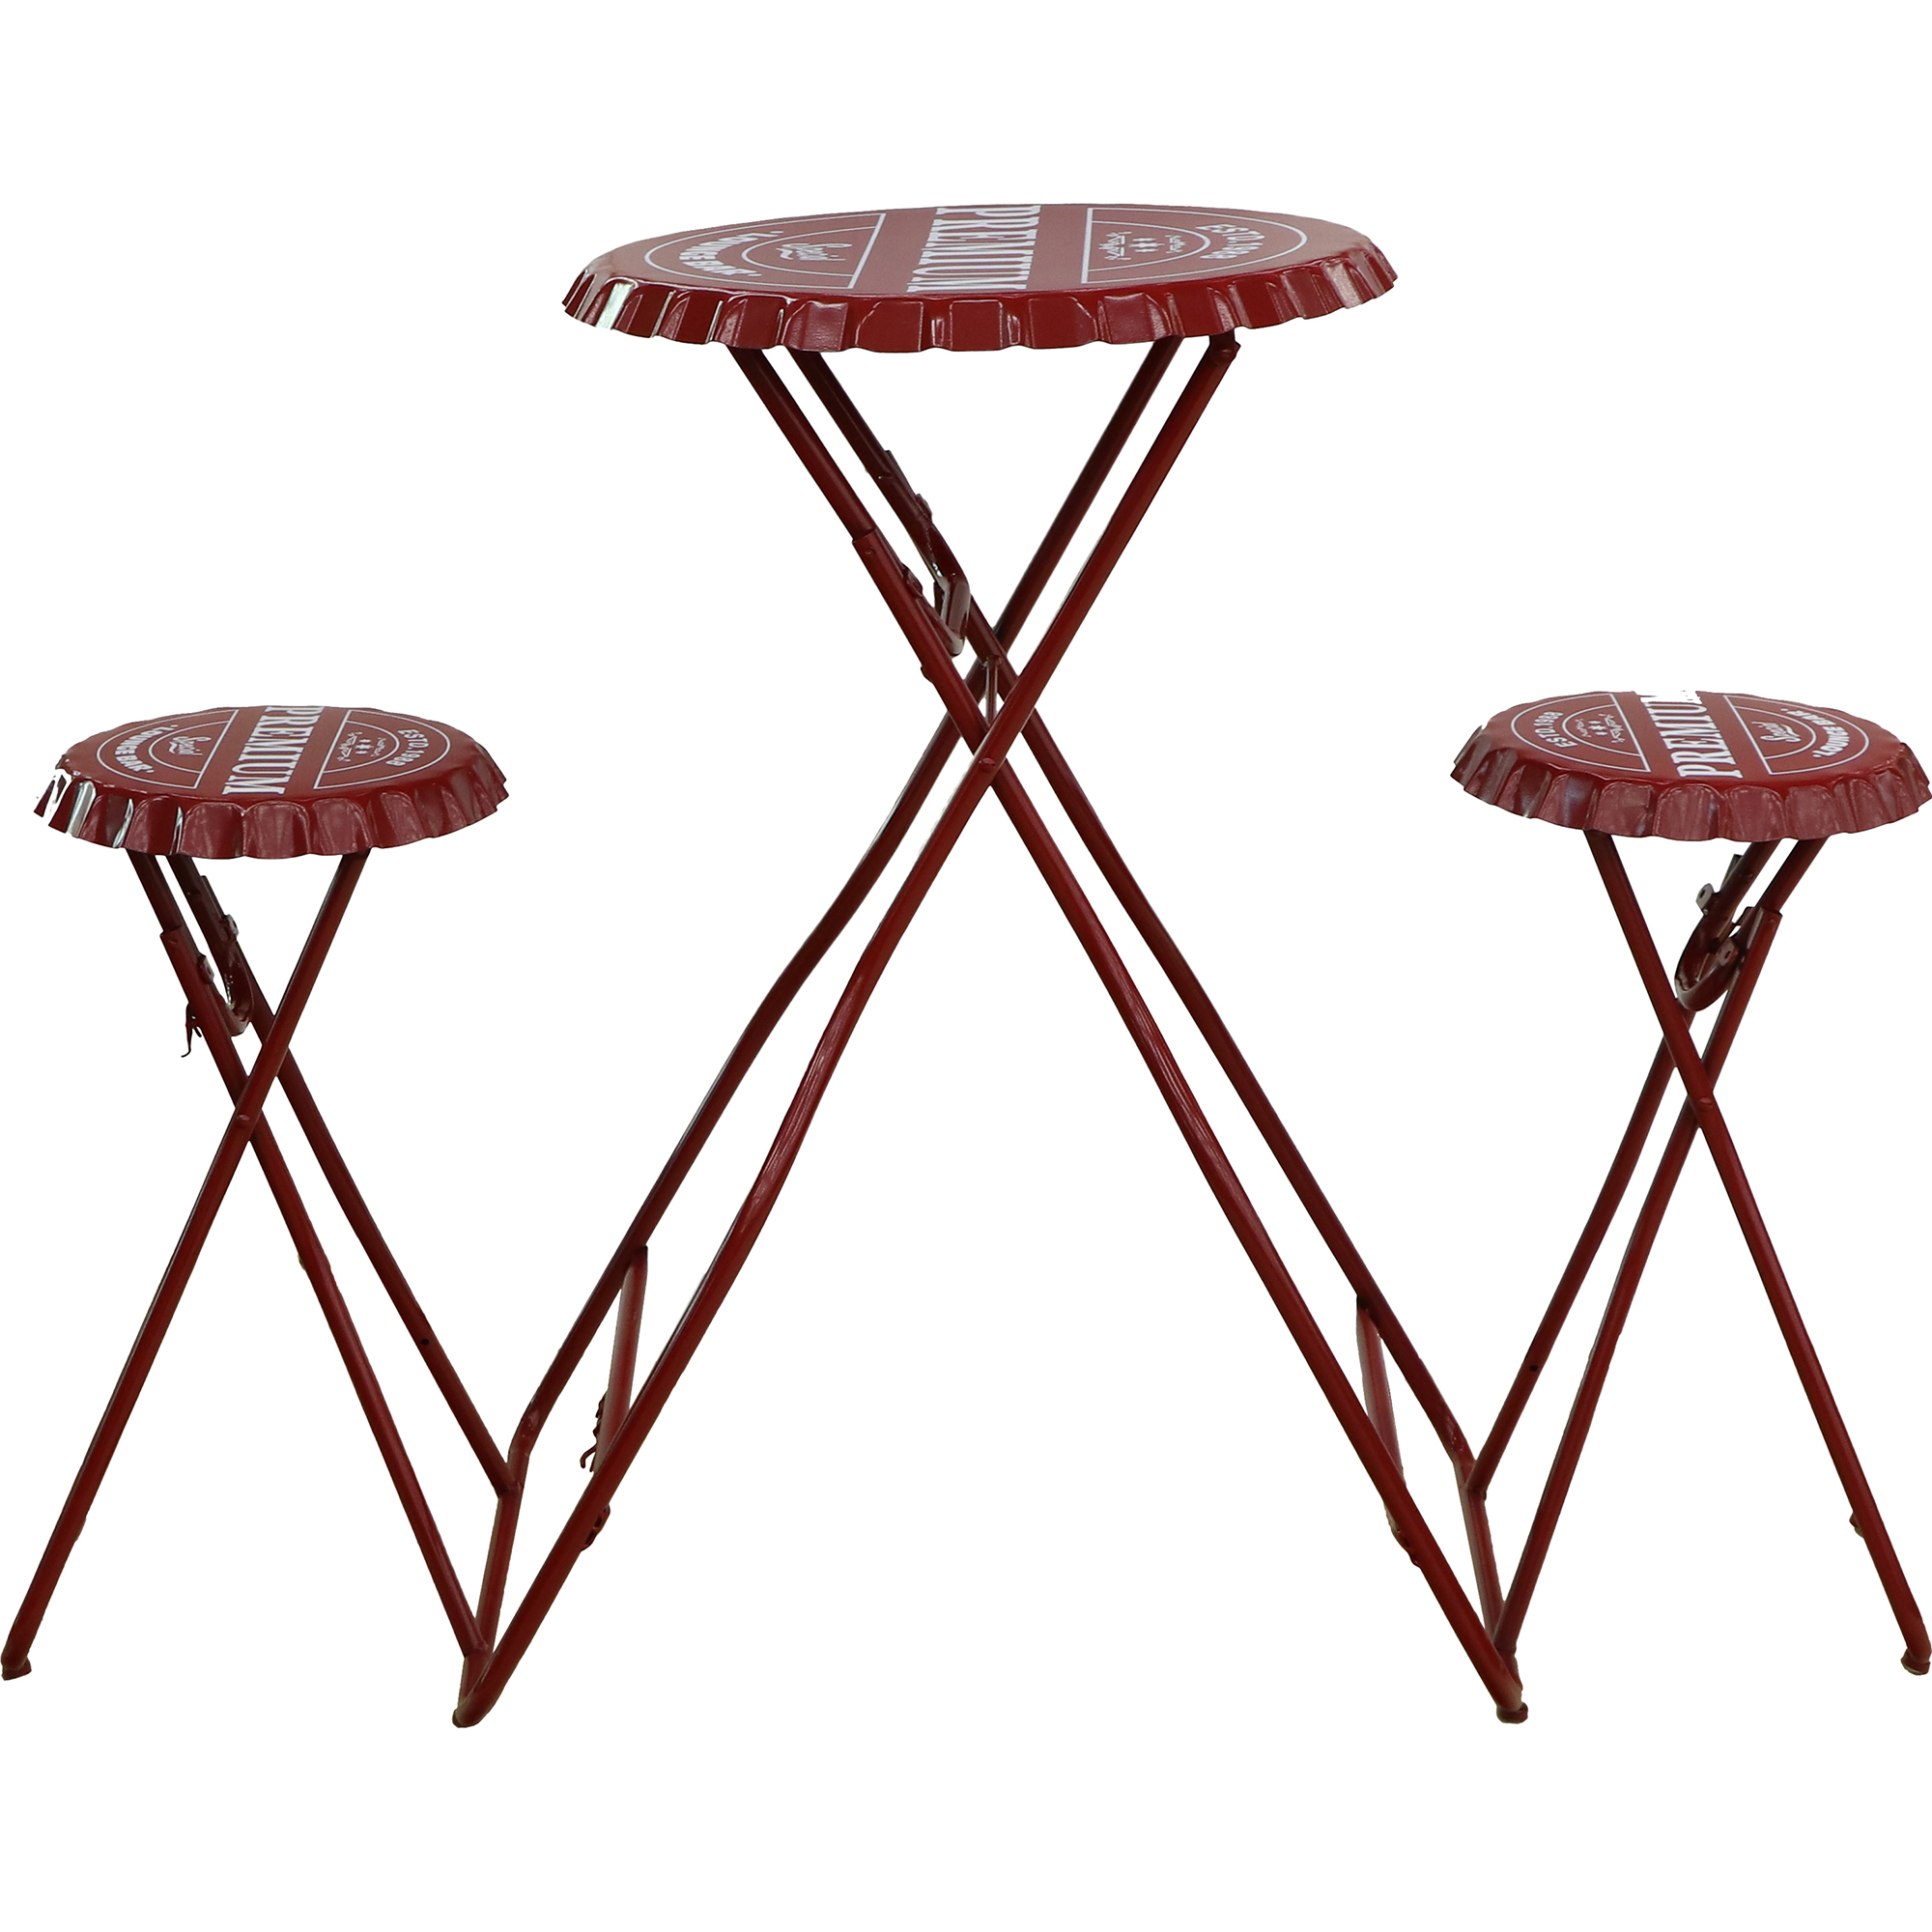 Мебель Koopman furniture пивная пробка 2 табурета и стол, цвет красный, размер 60х60х100 см - фото 2